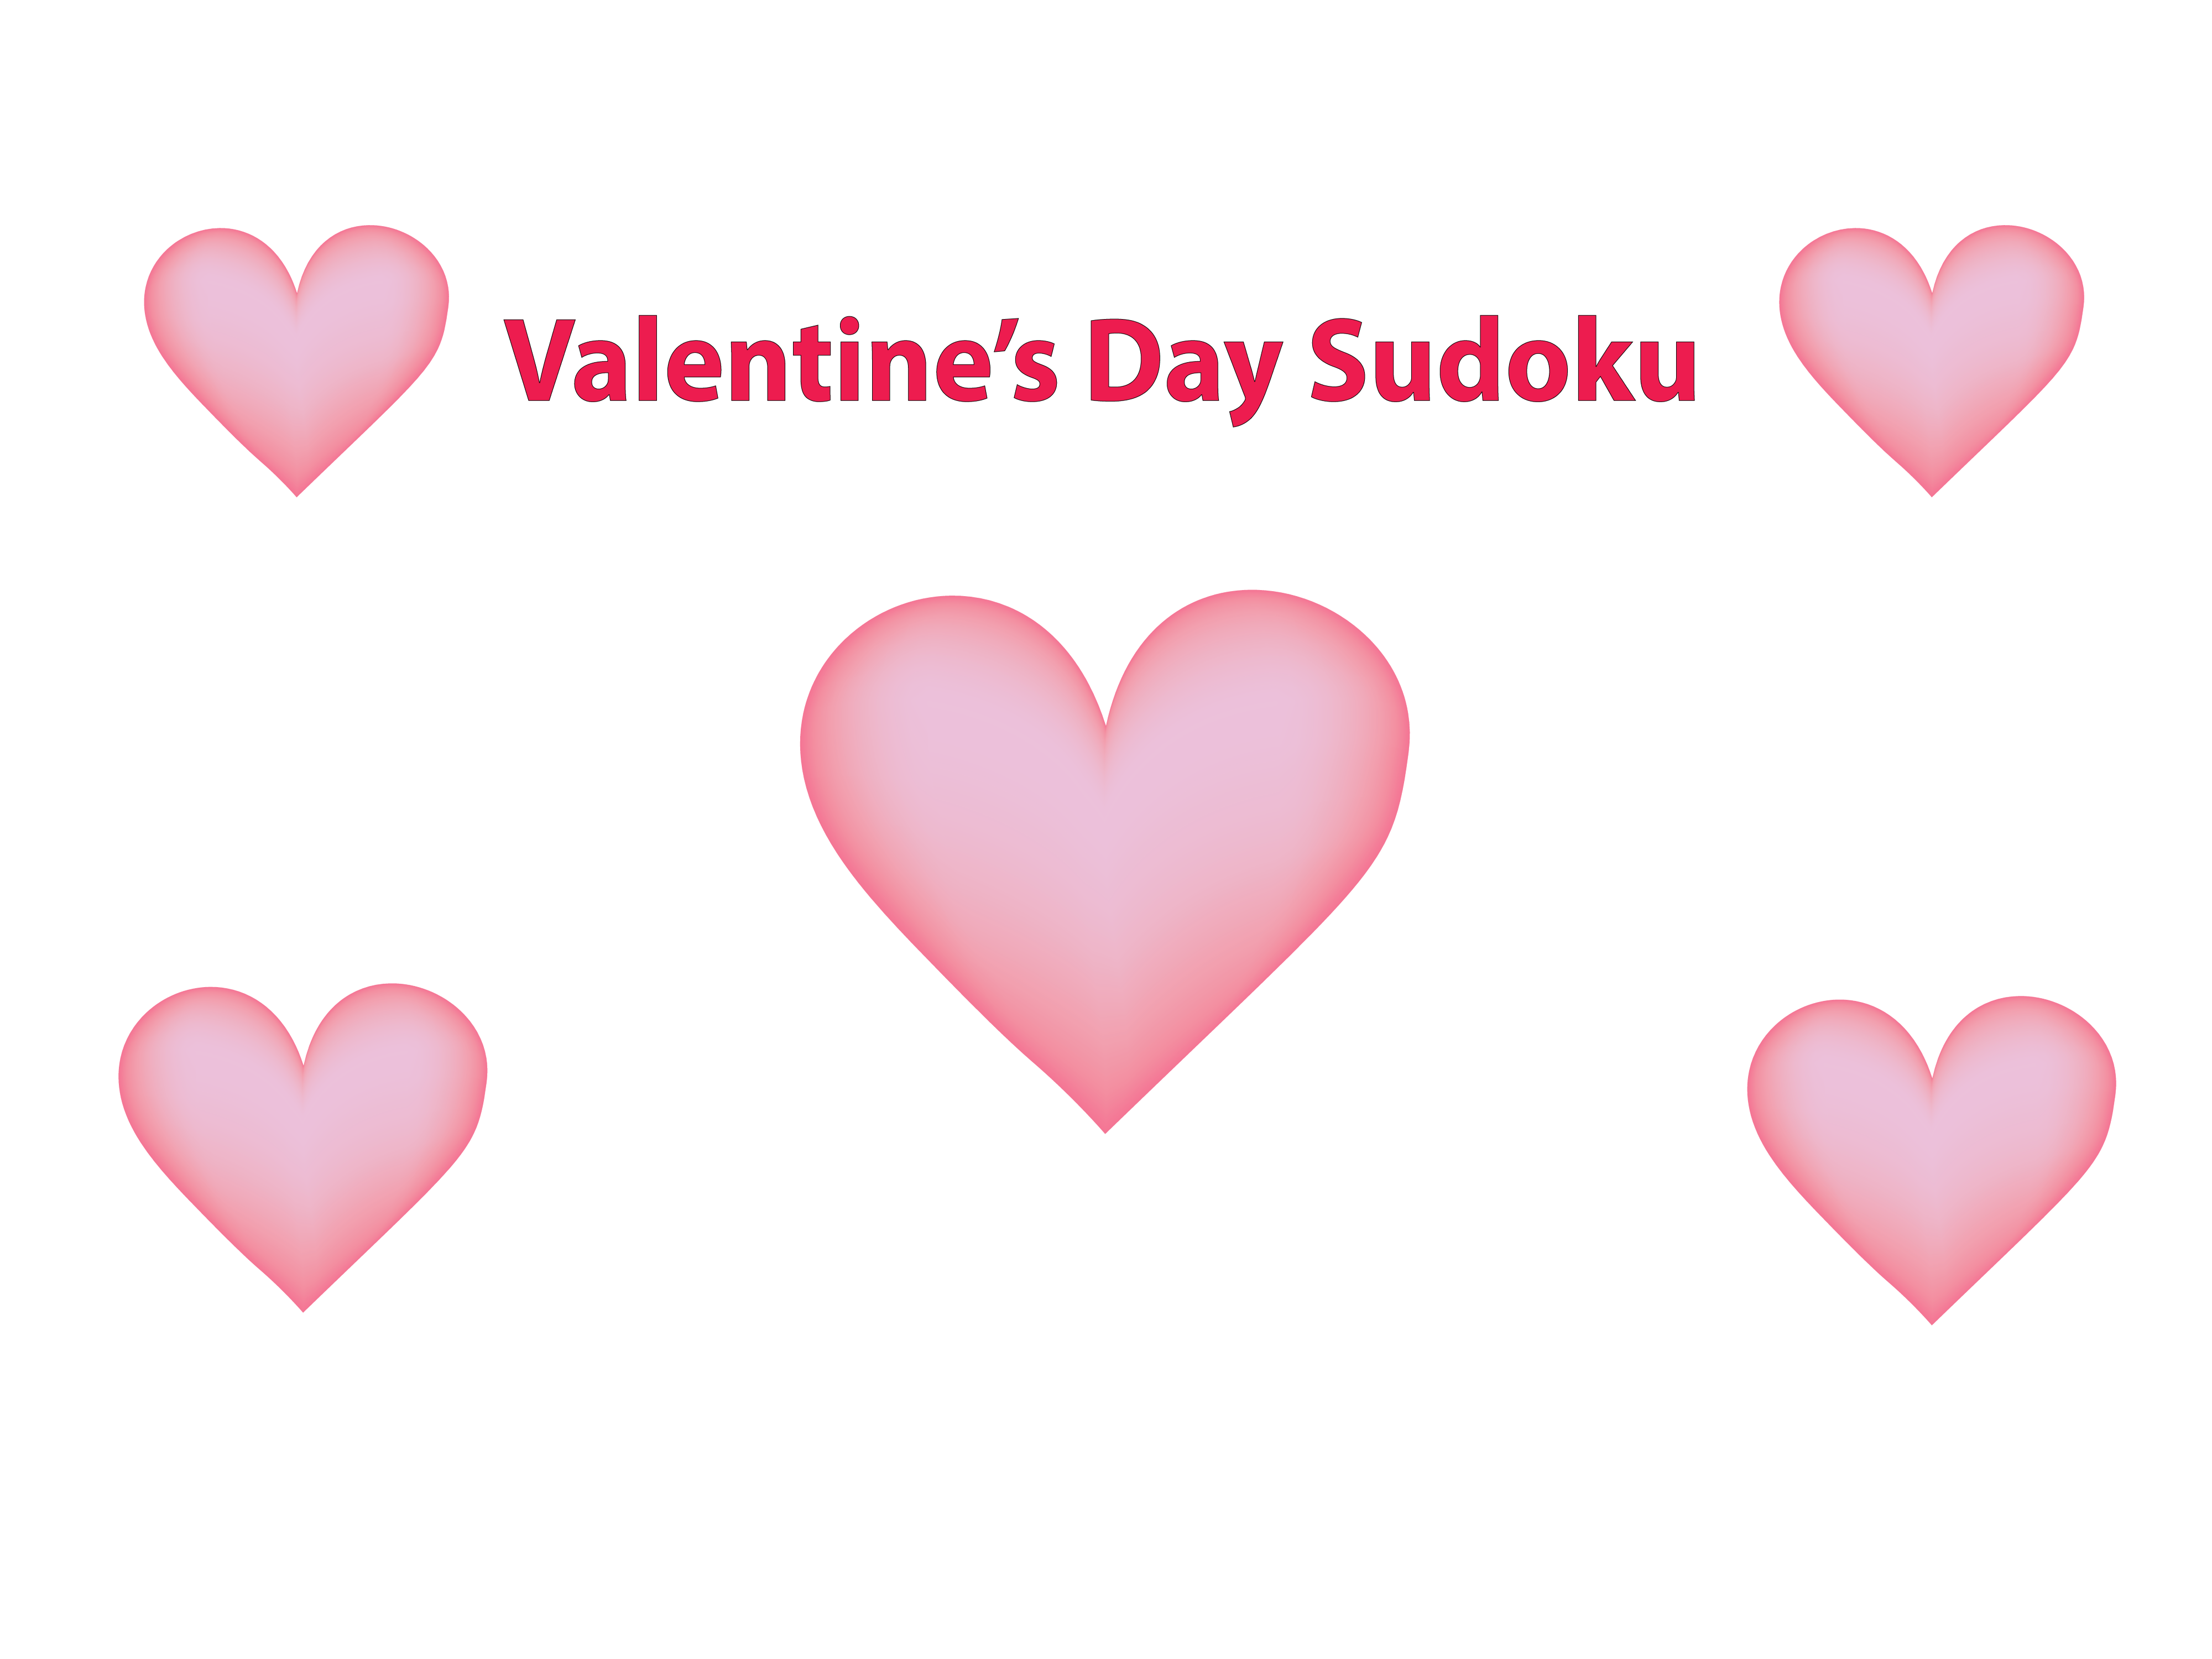 Valentine's day sudoku